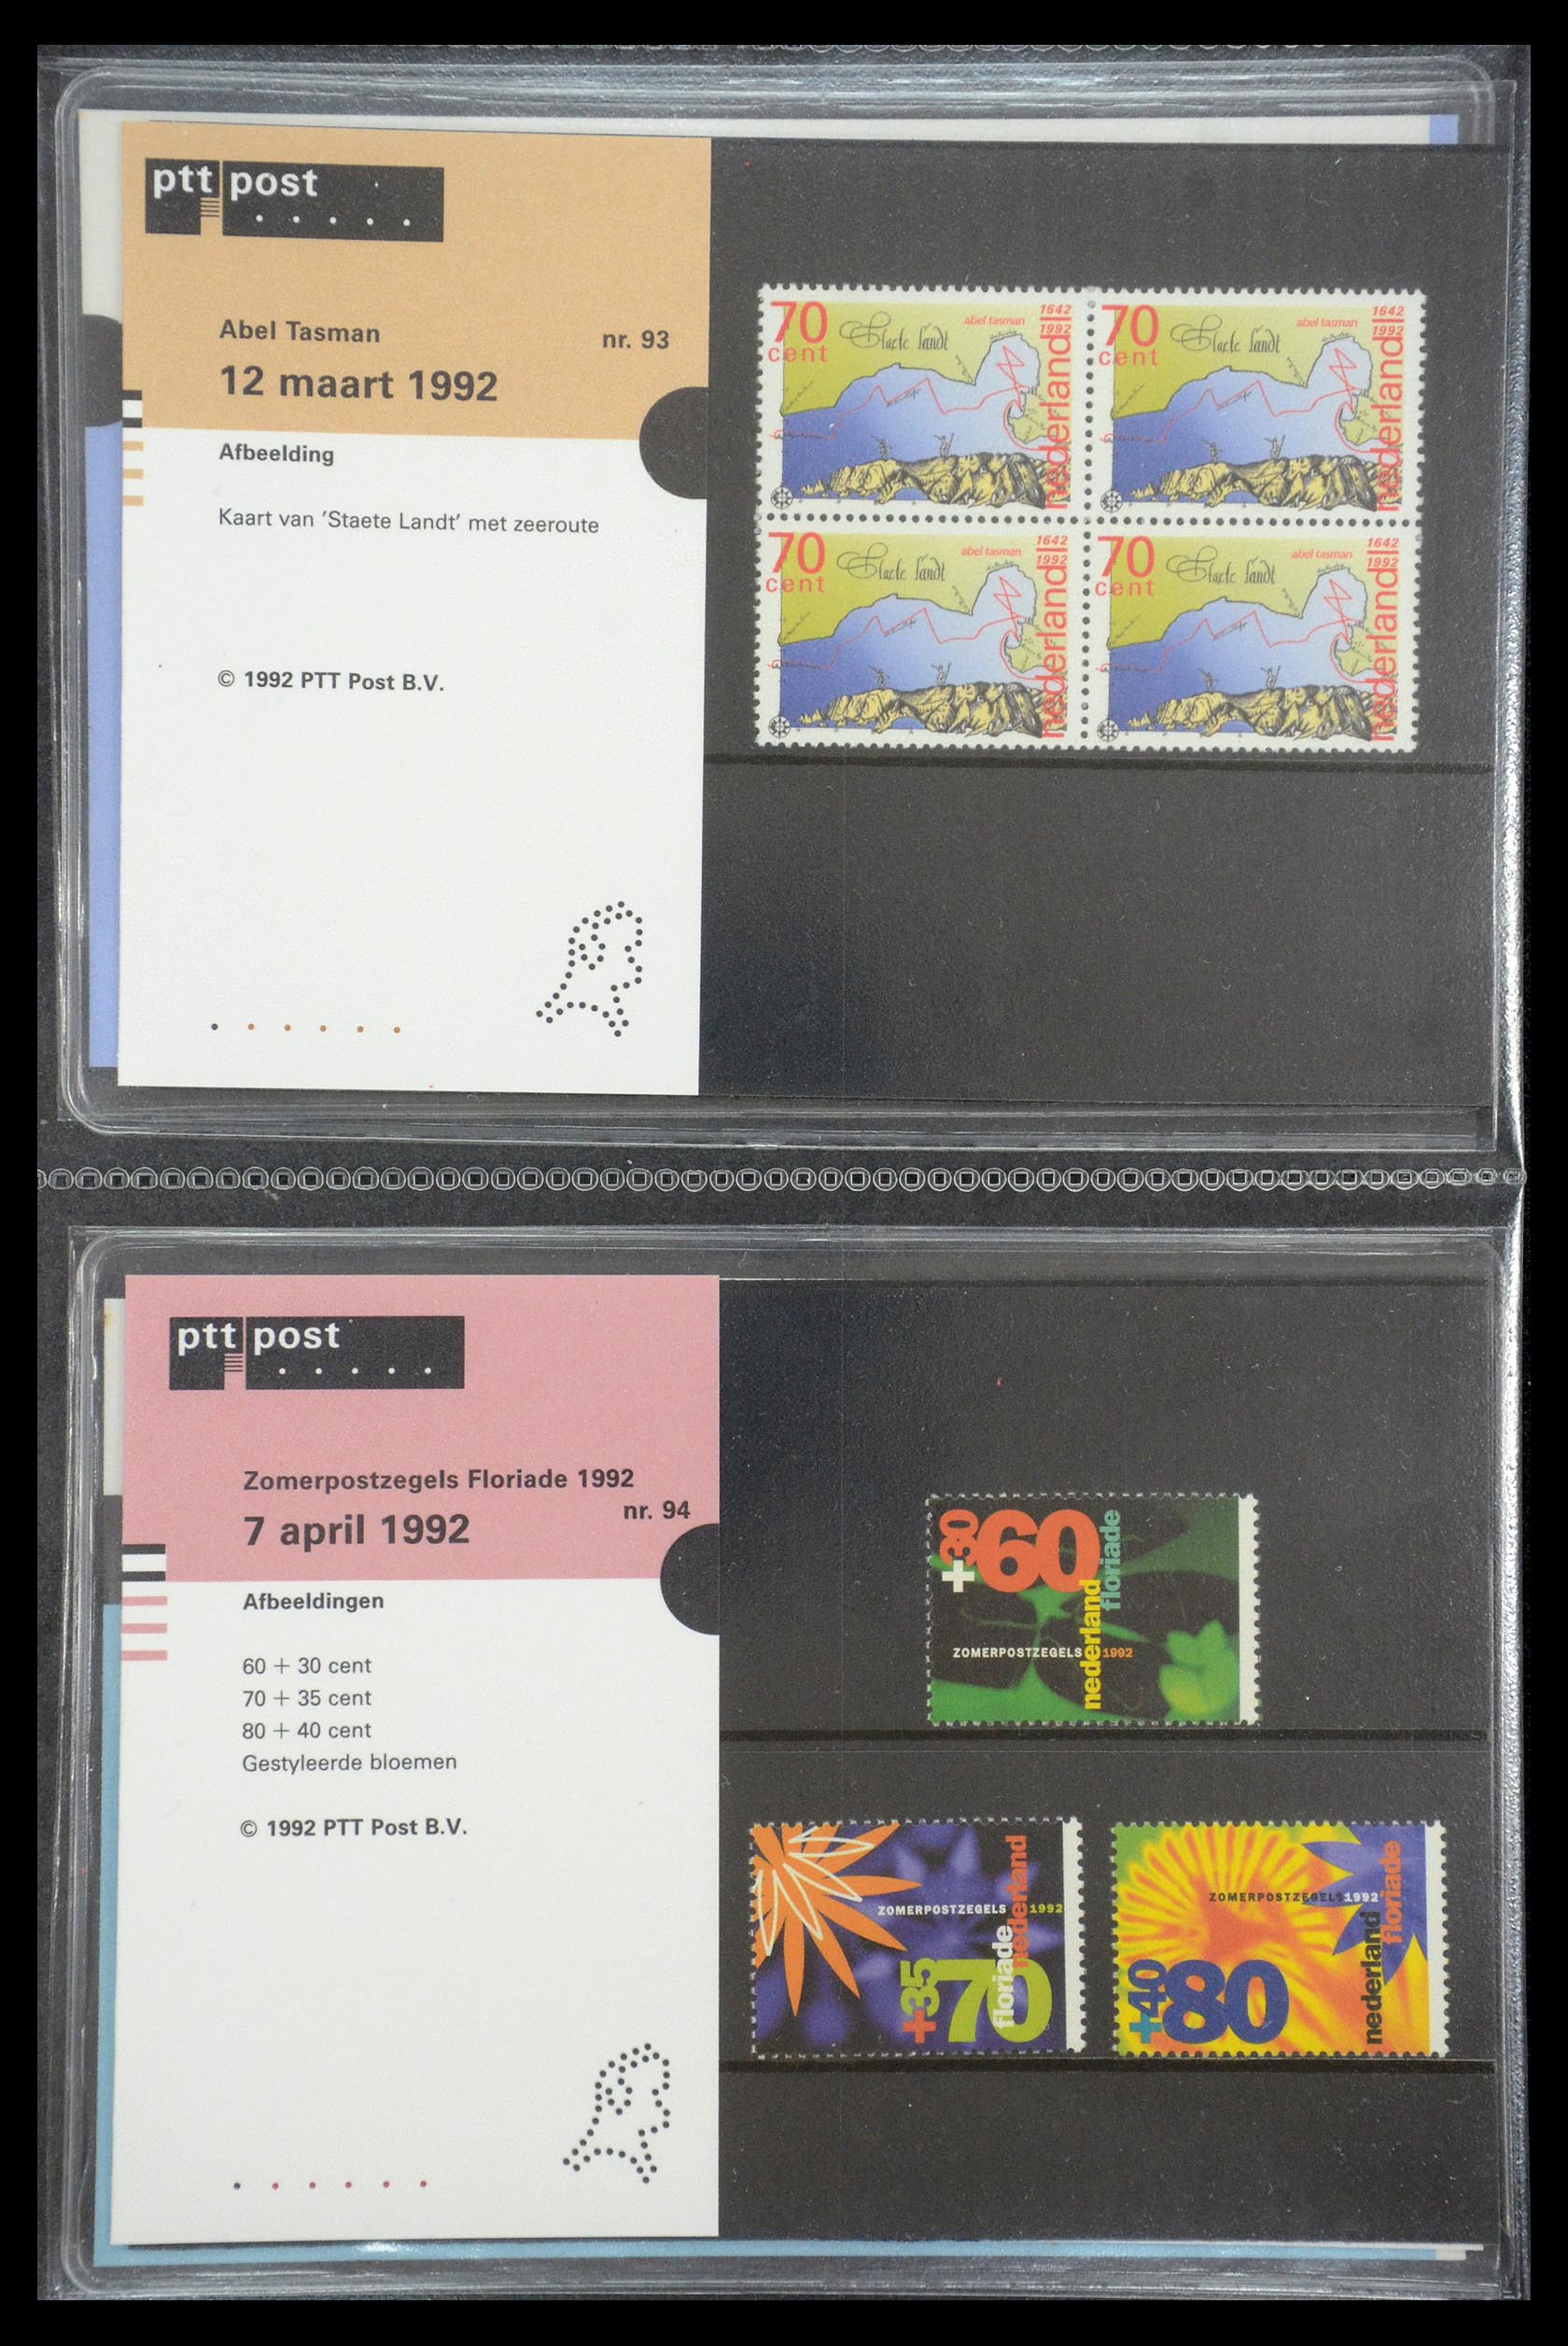 35187 047 - Stamp Collection 35187 Netherlands PTT presentation packs 1982-2019!